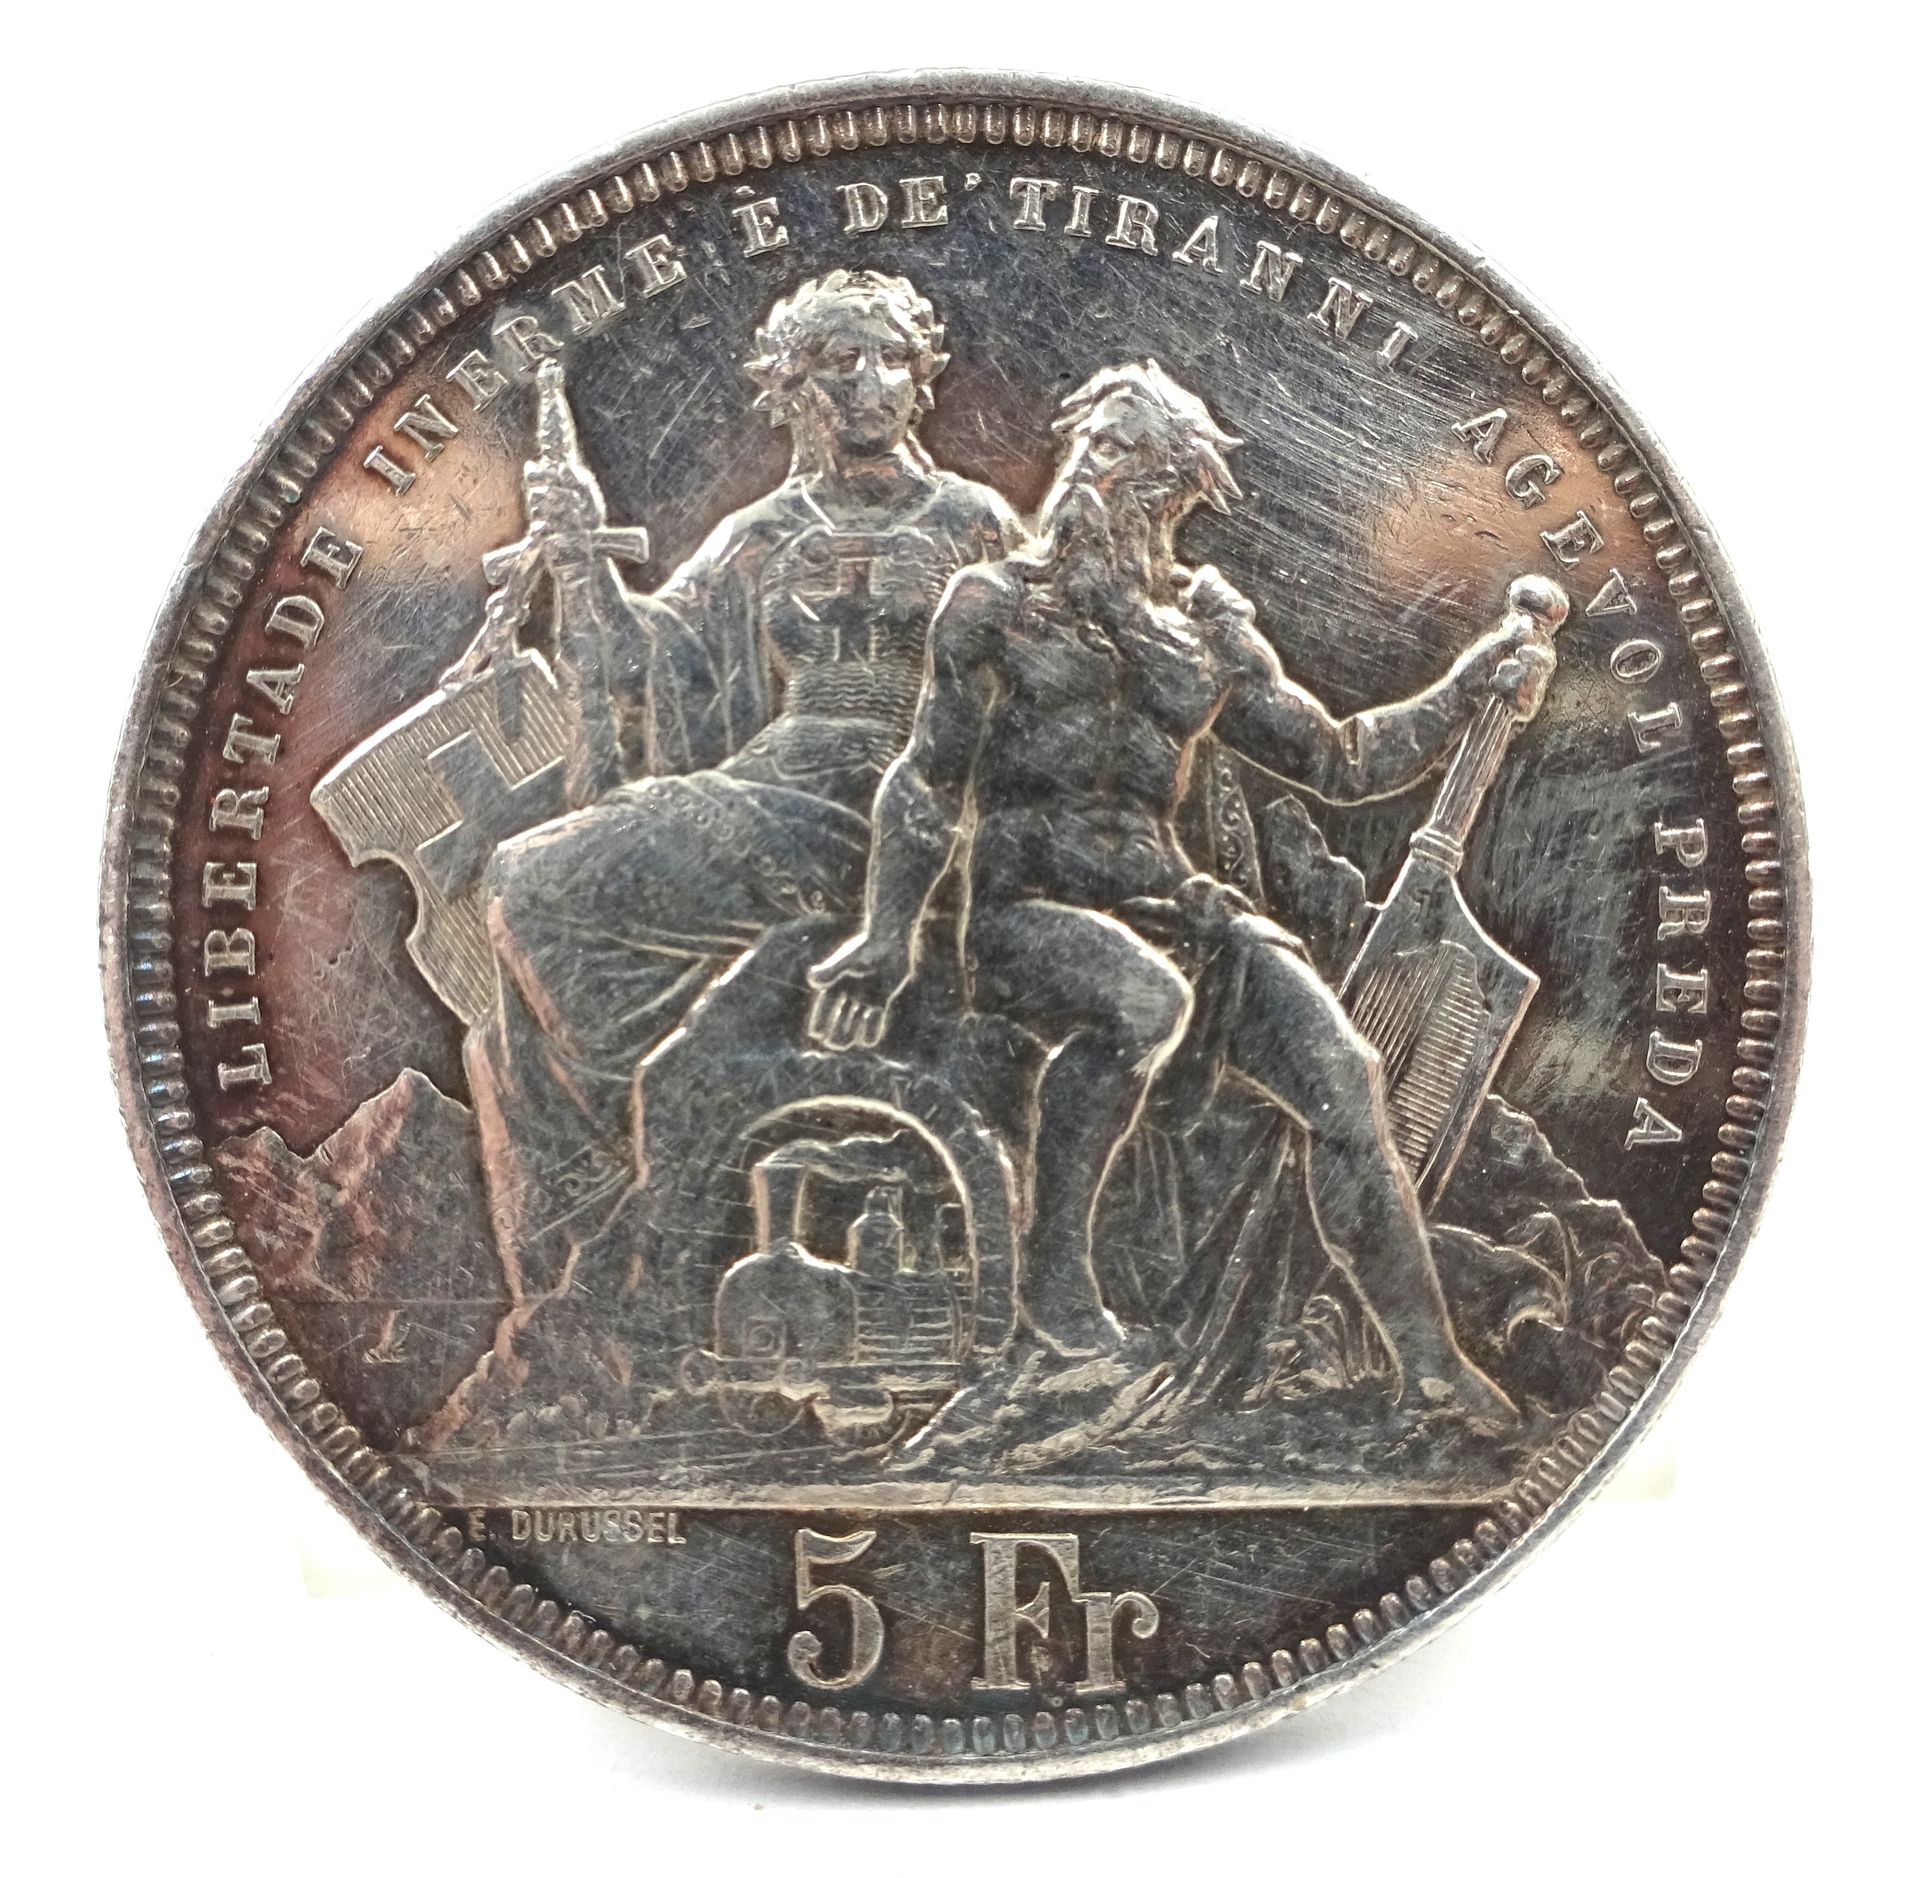 Null Moneda de plata de 5 francos suizos, Lugano, 1883. 25,01 g netos.